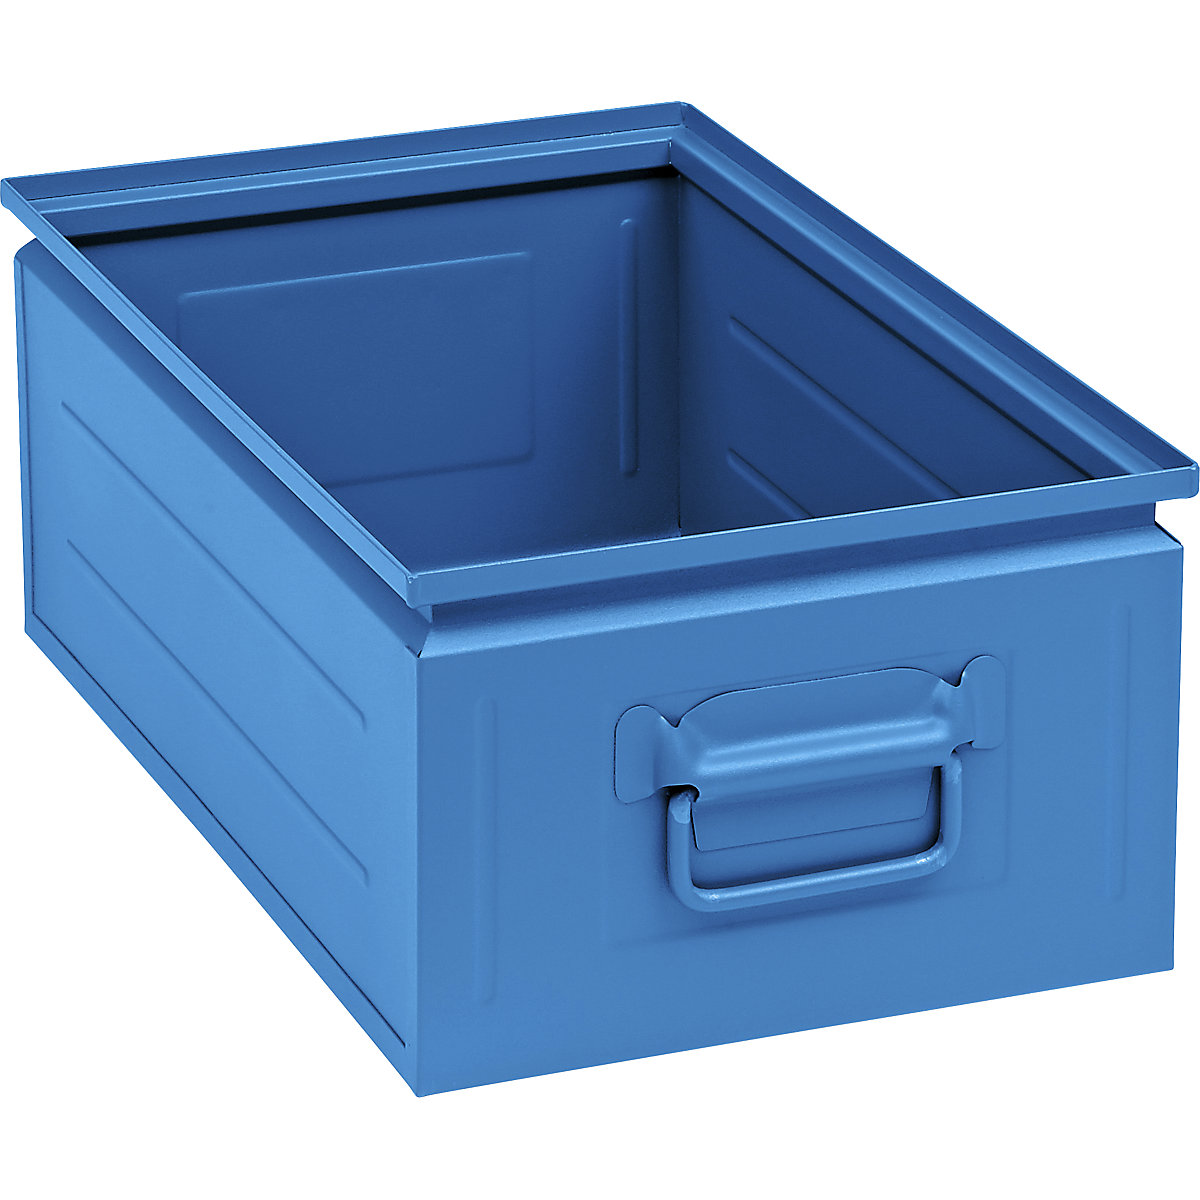 Caixa empilhável em chapa de aço, capacidade de aprox. 30 l, azul claro RAL 5012